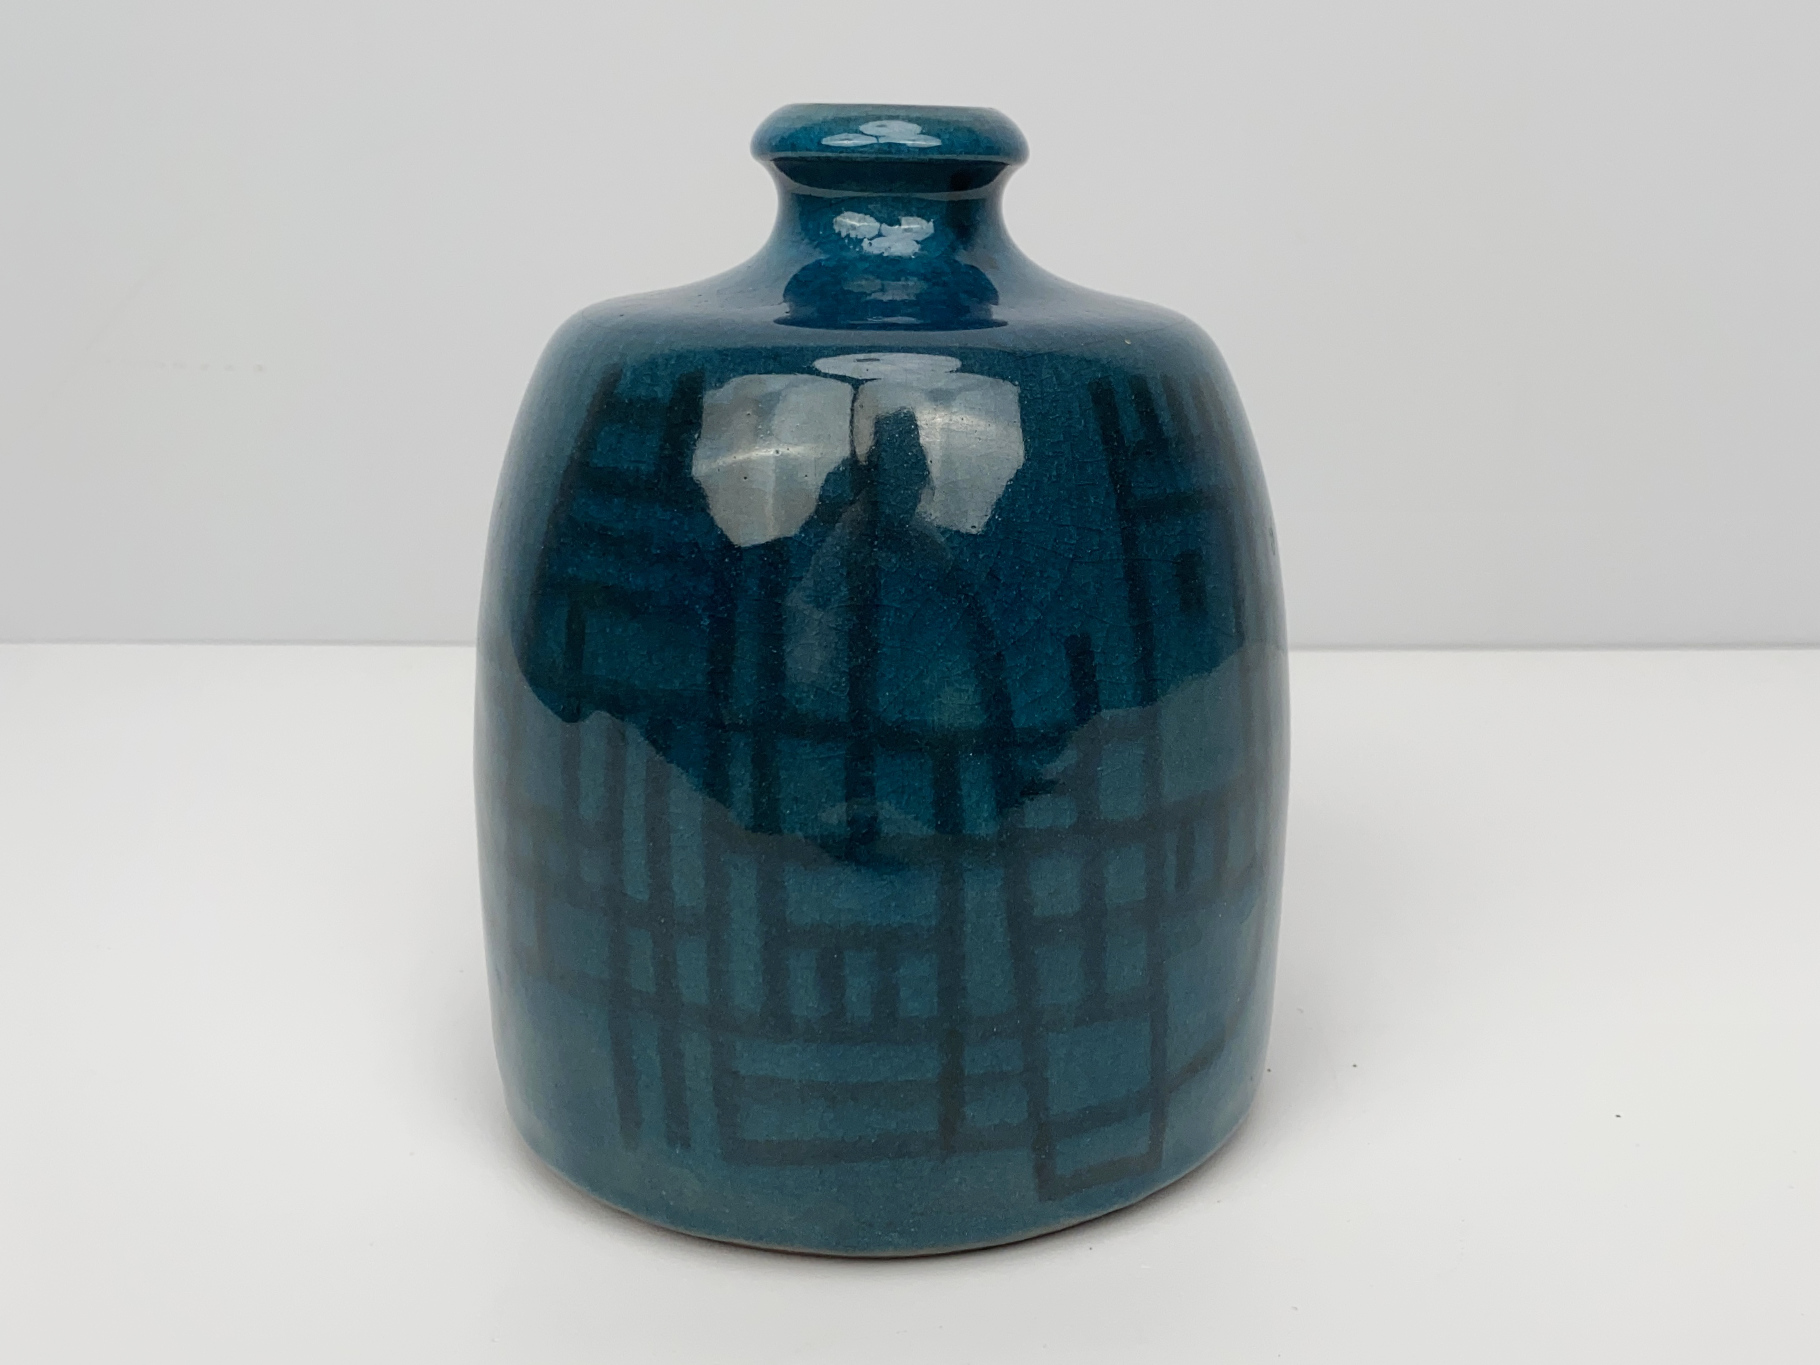 Vase, Keramik, Irdenware, Unikat, glasiert, bemalt mit geometrischem Strichmuster, von Wilhelm & Elly Kuch, 1970er